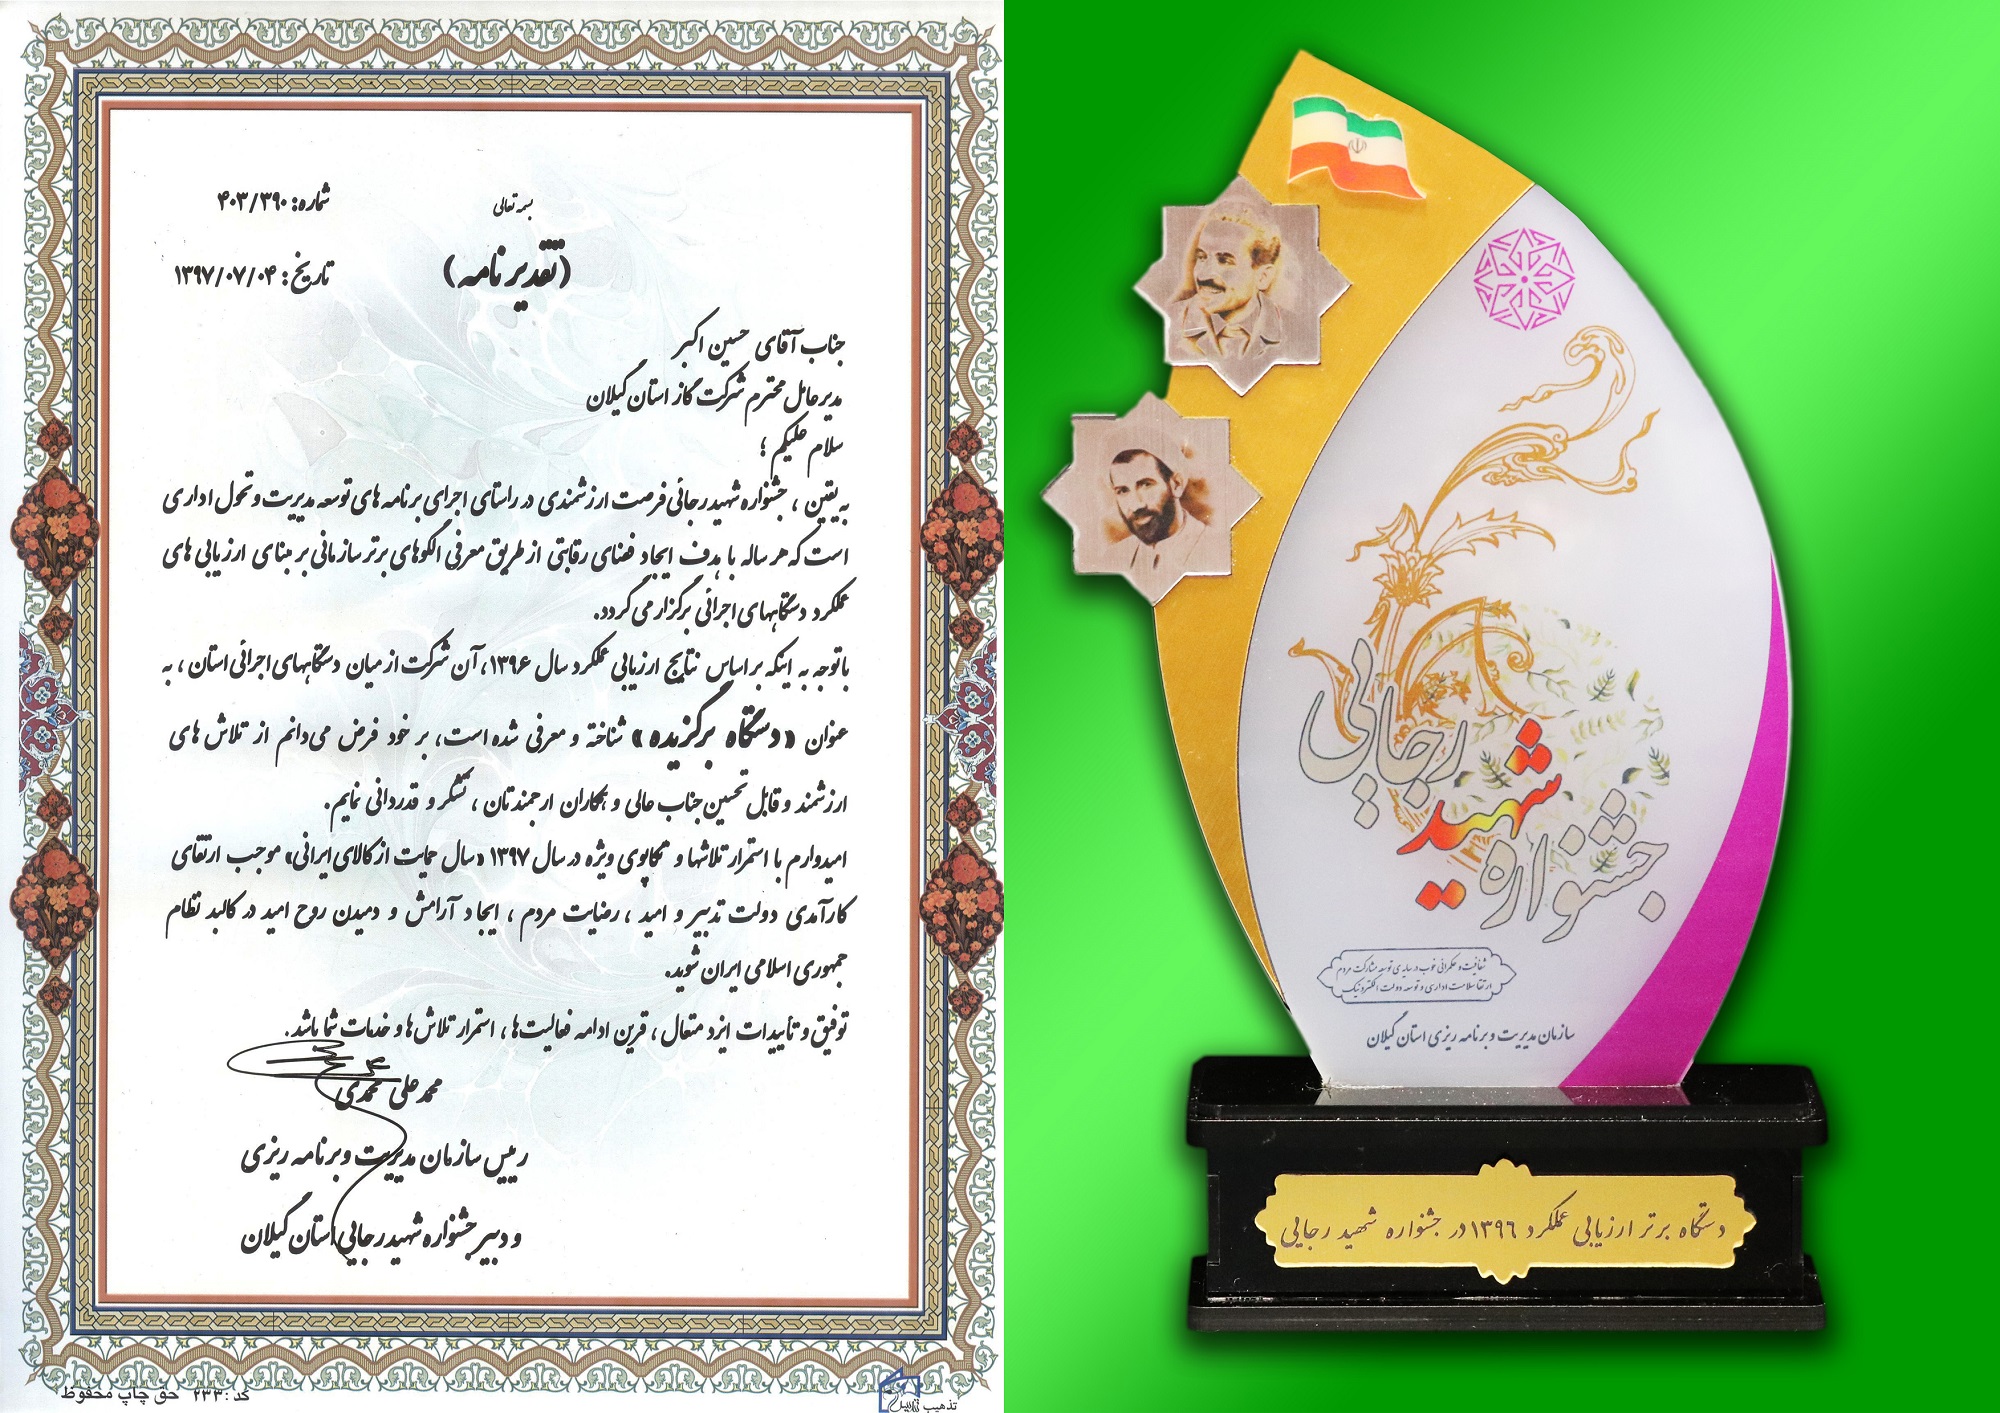 شرکت گاز استان گیلان دستگاه خدماتی برگزیده در جشنواره شهید رجائی